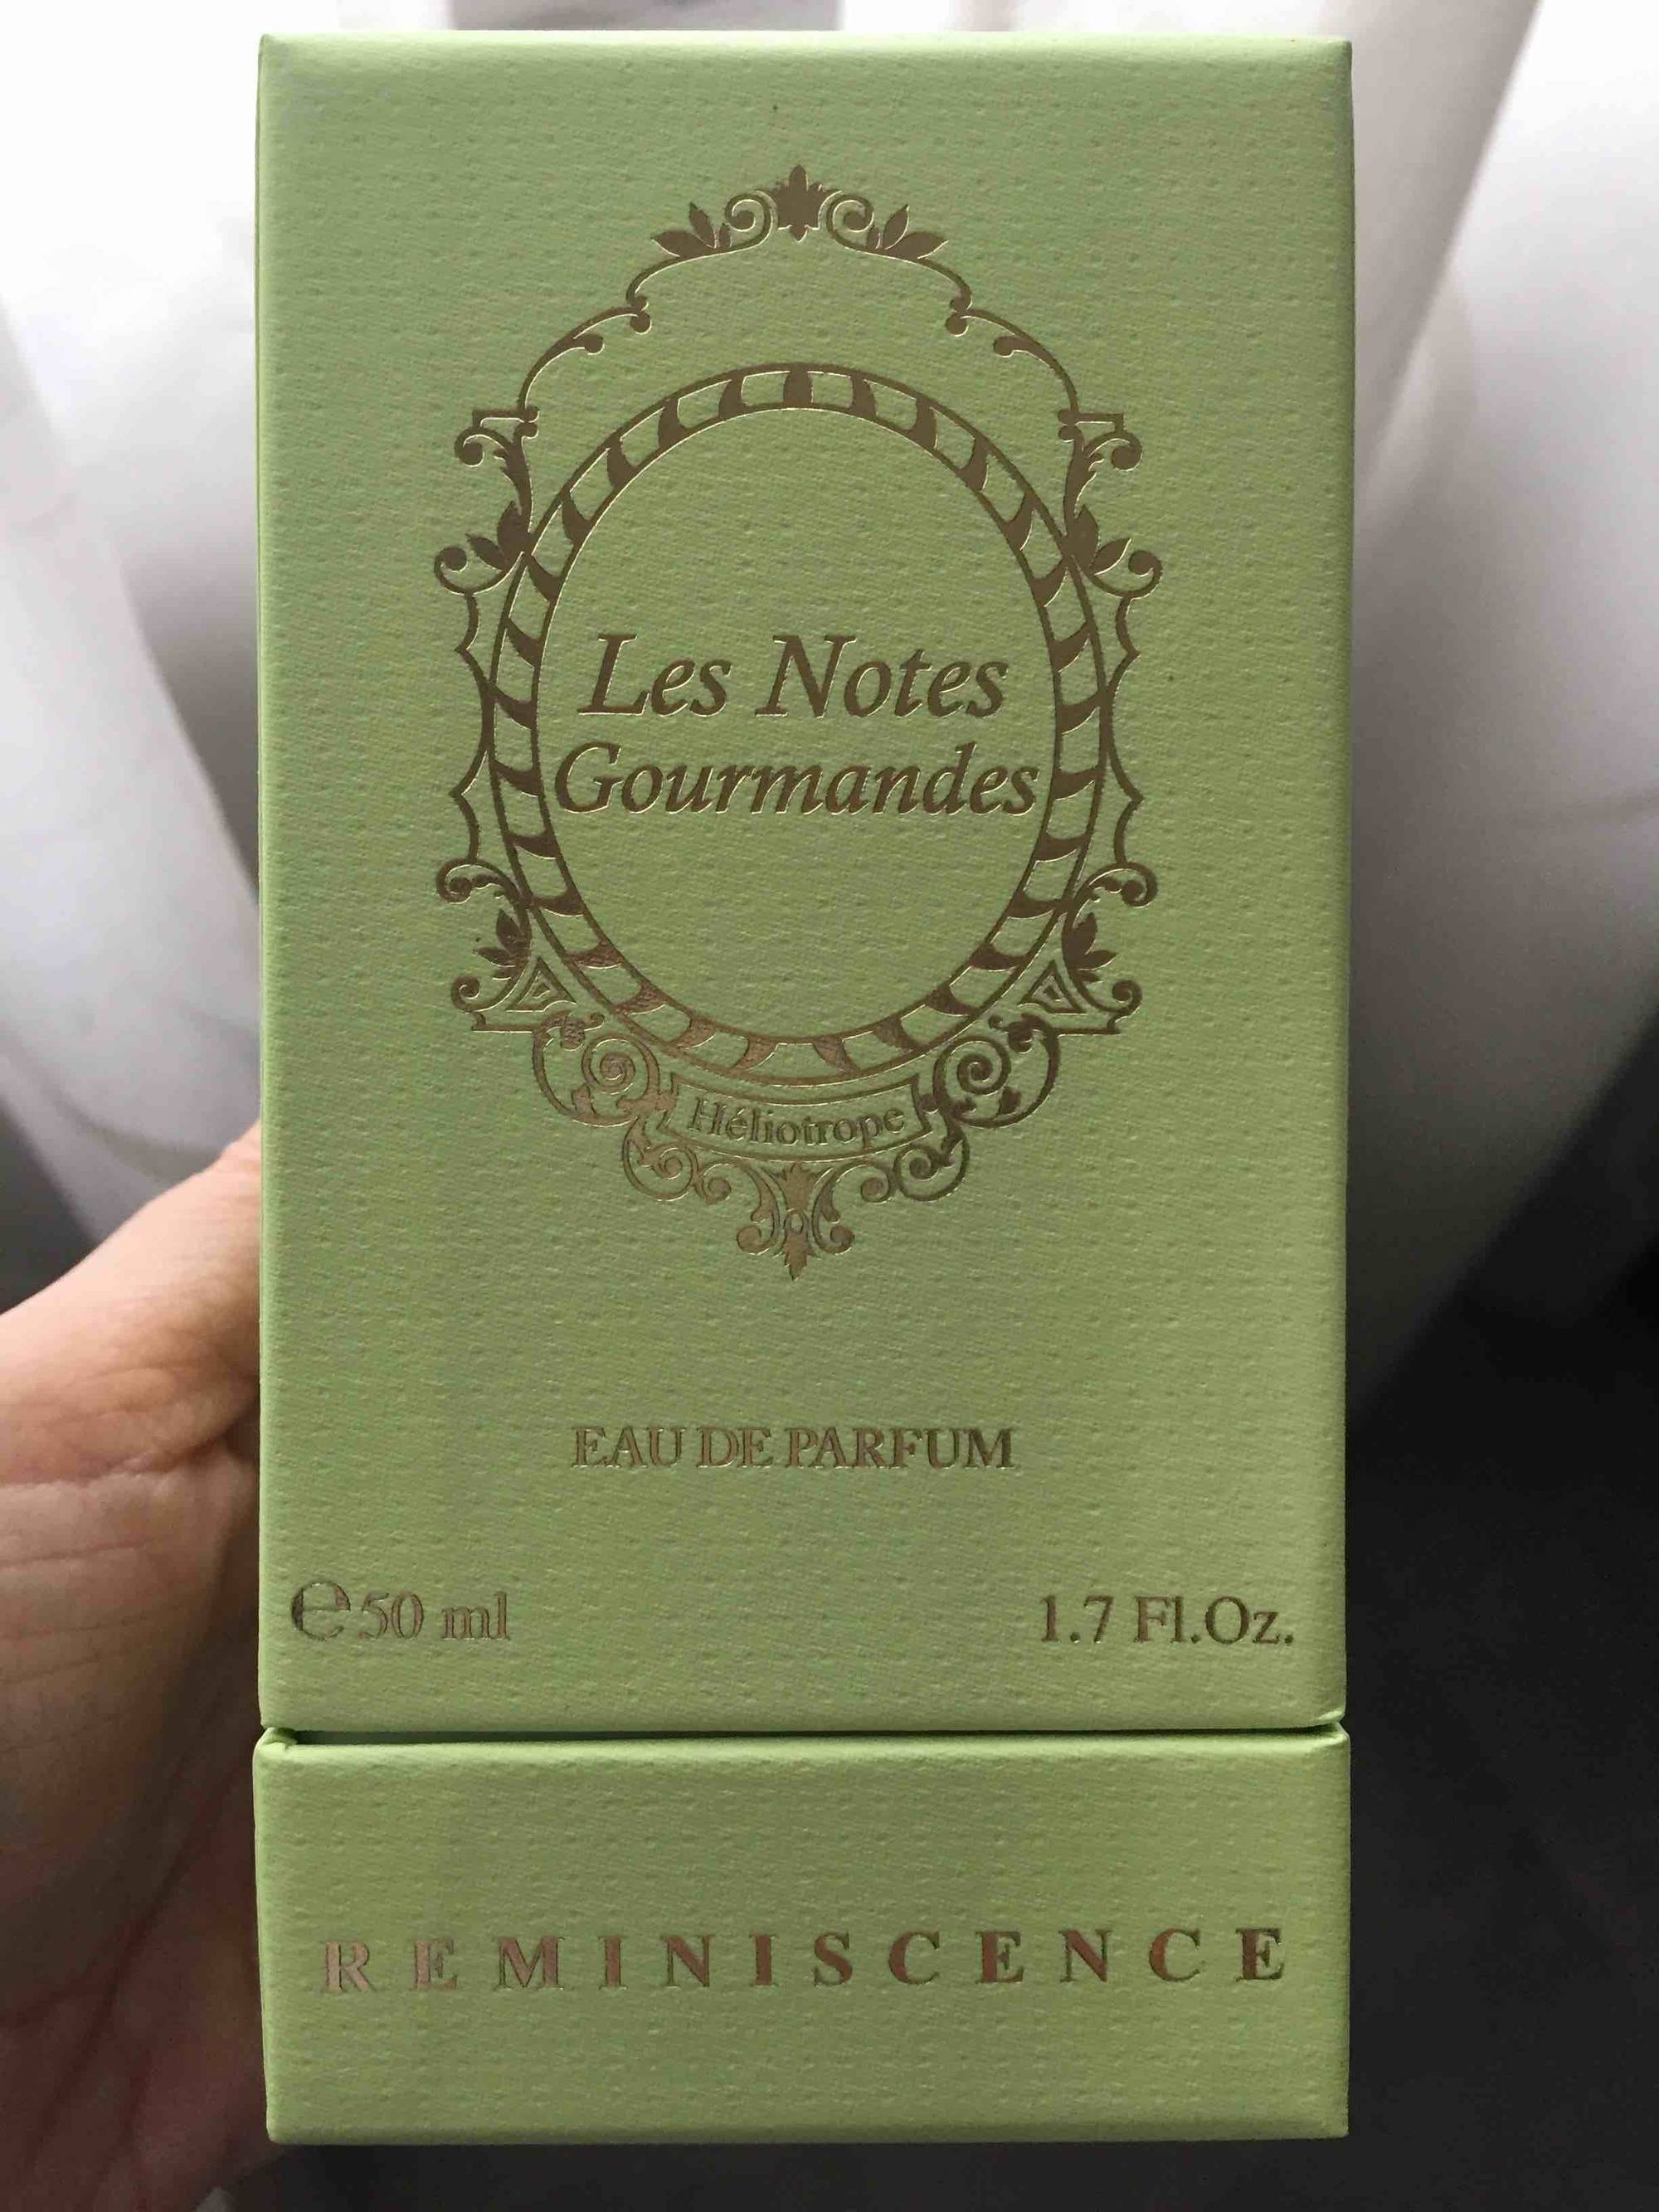 REMINISCENCE - Les Notes Gourmandes - Eau de parfum